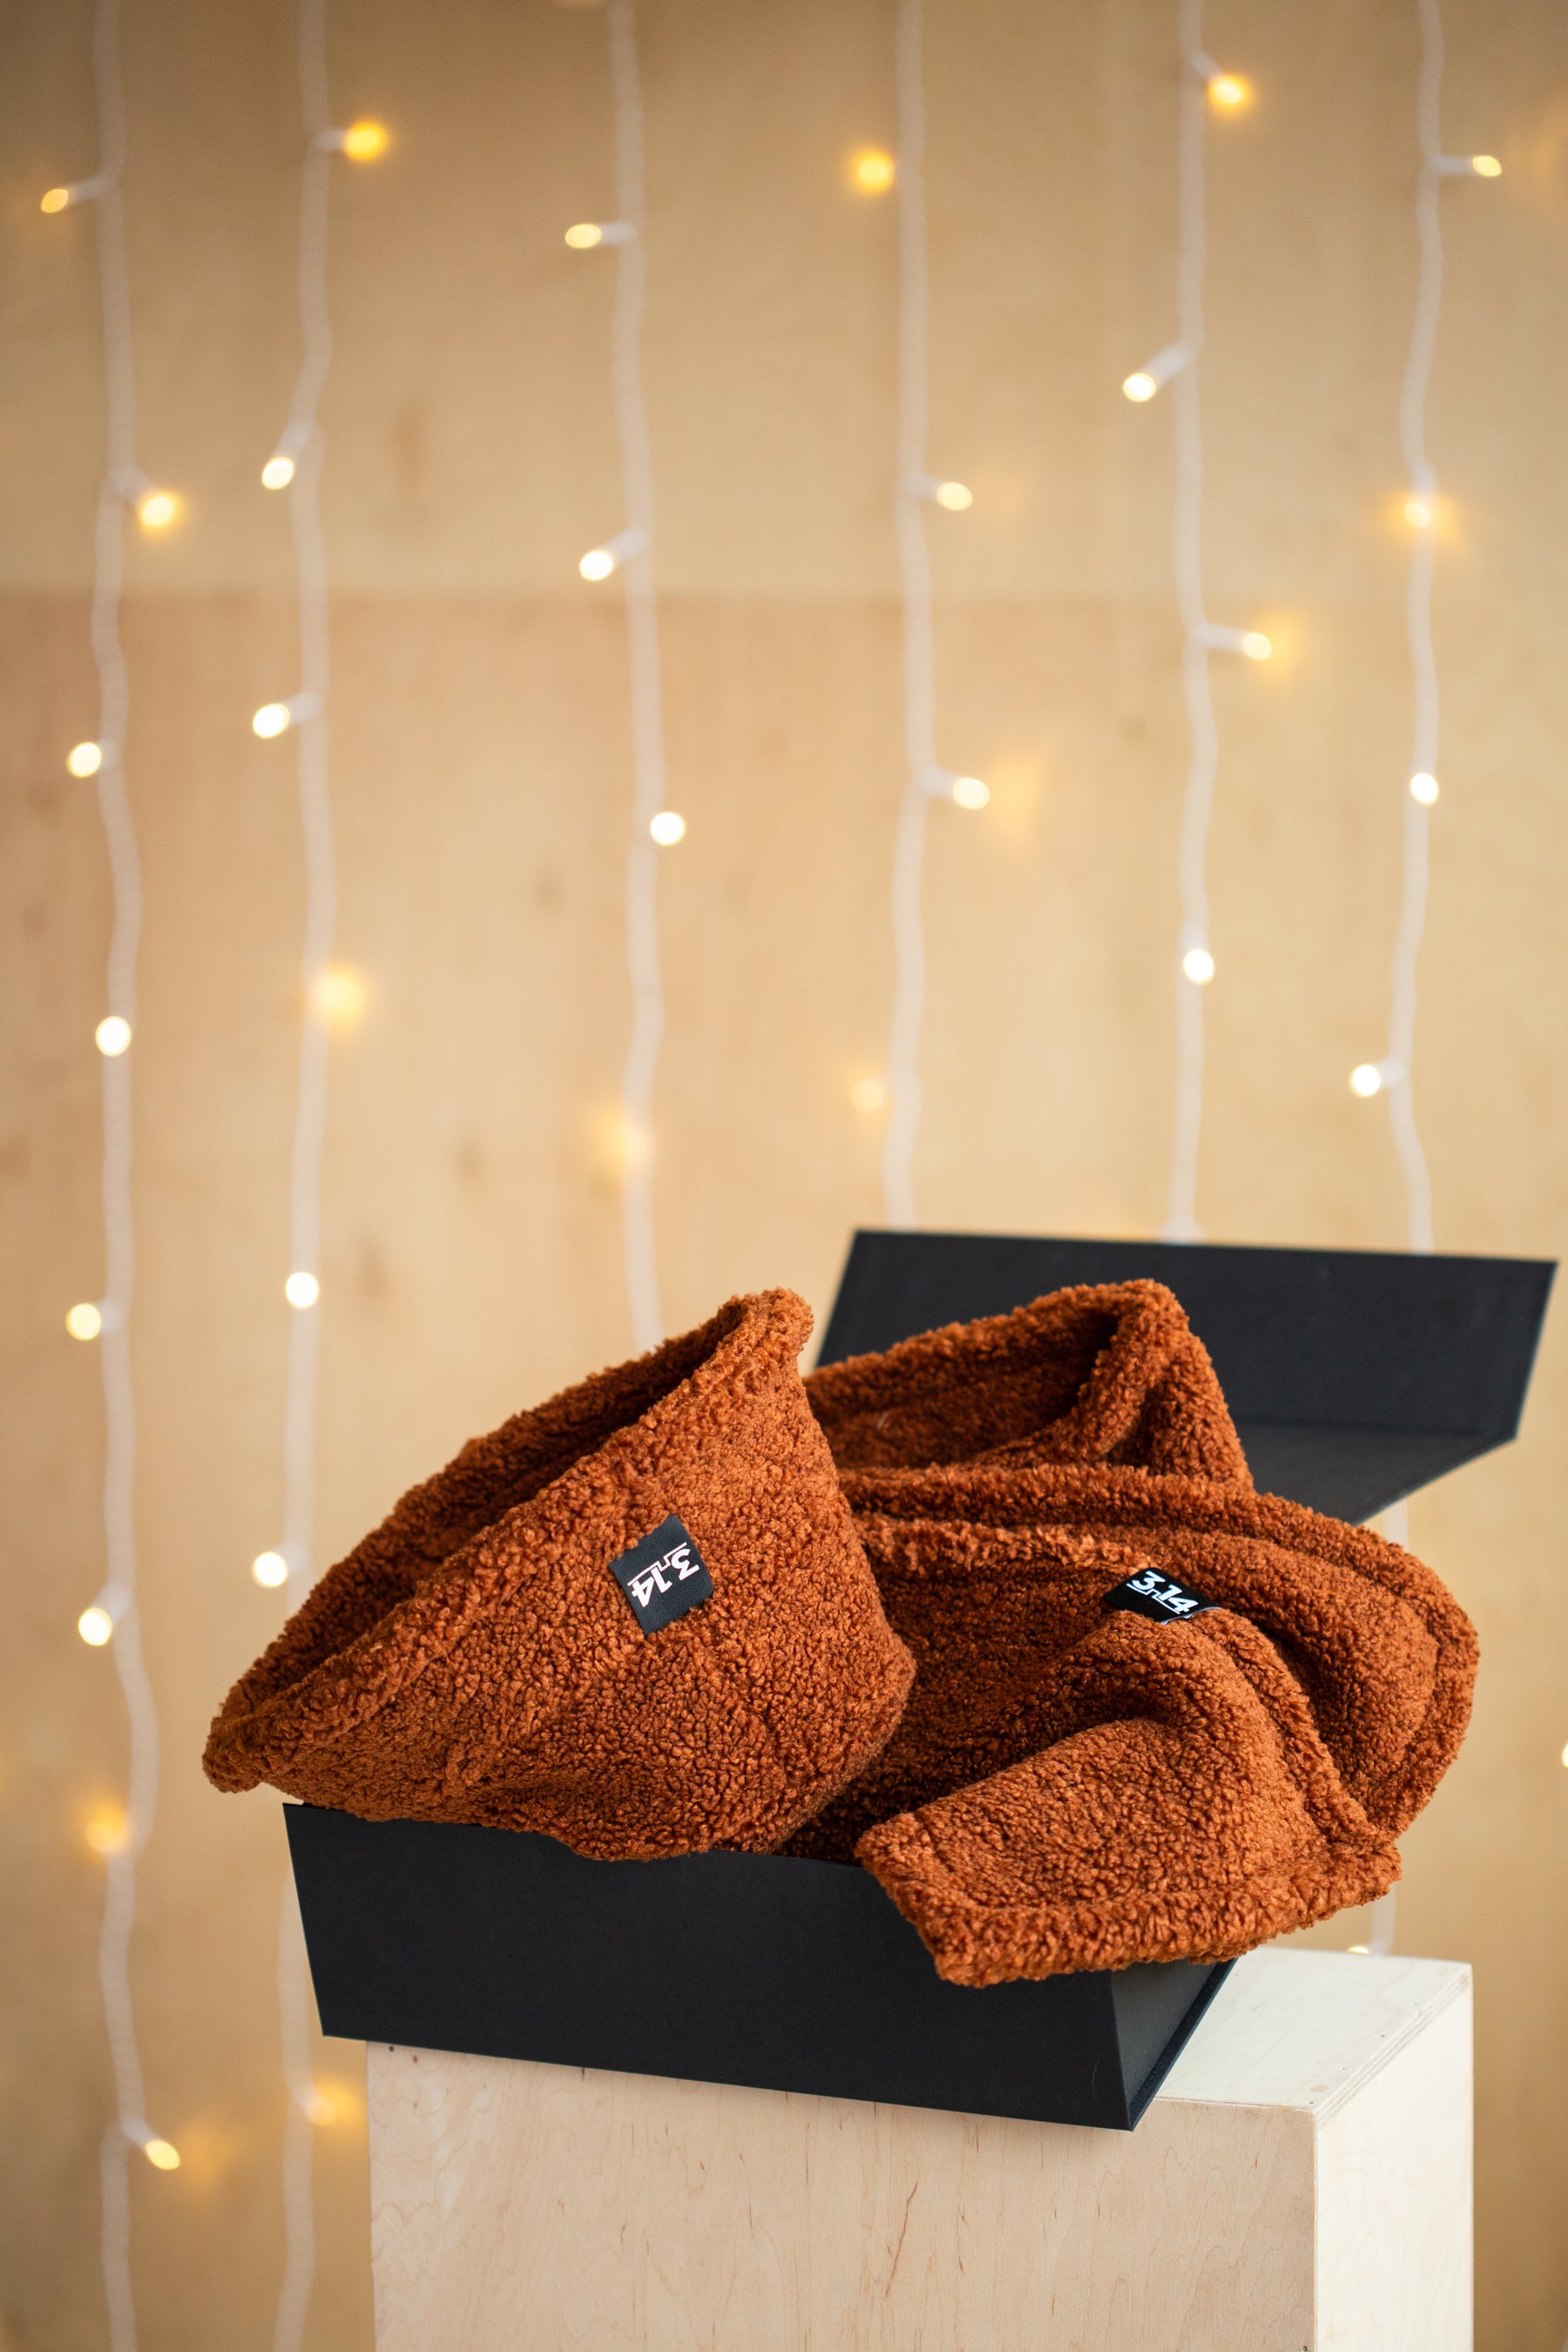 Caramel TEDDY gift set (scarf + hat)